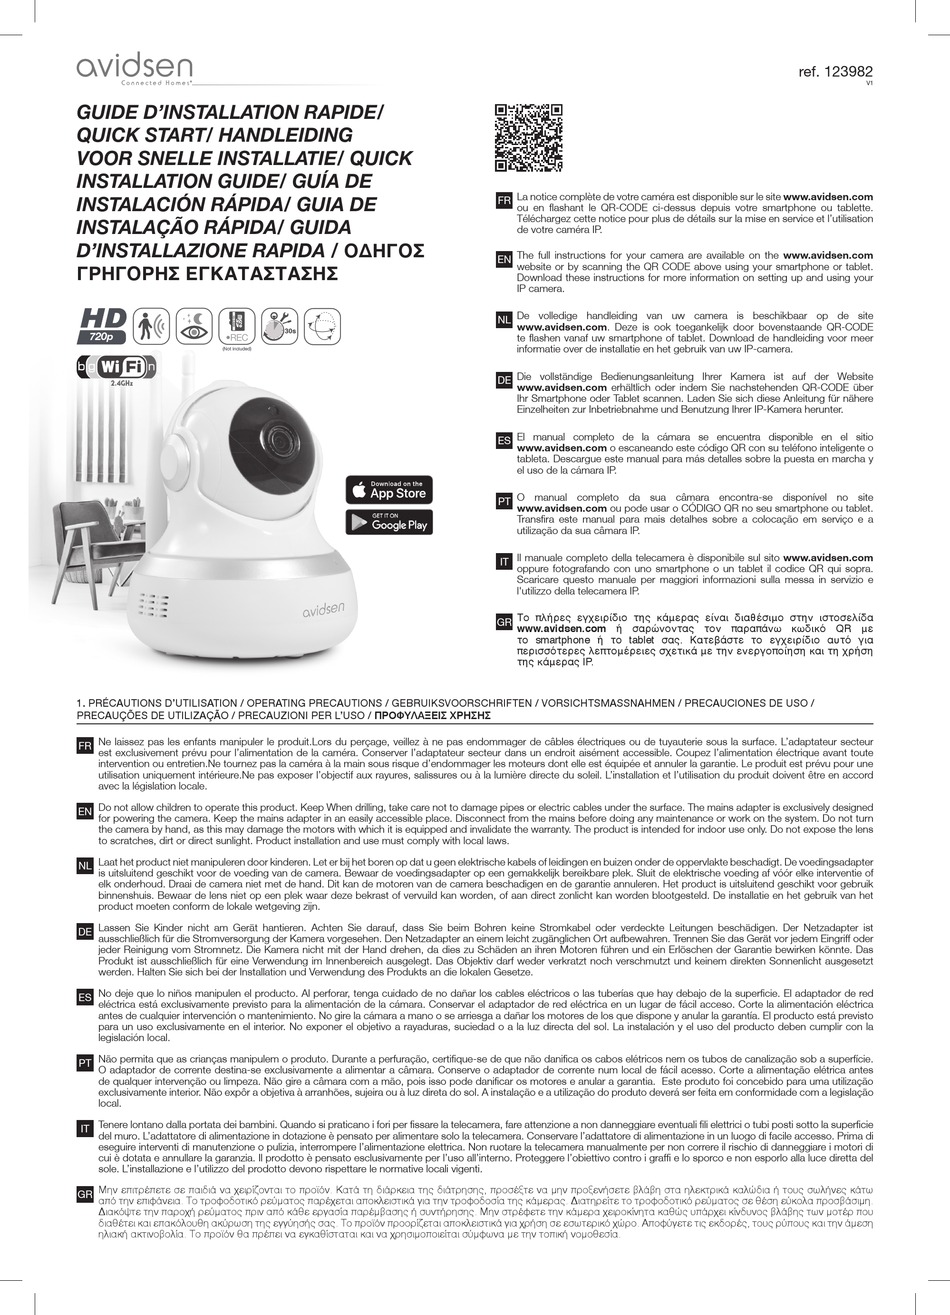 Notice à télécharger - 123982 - Caméra de surveillance intérieure